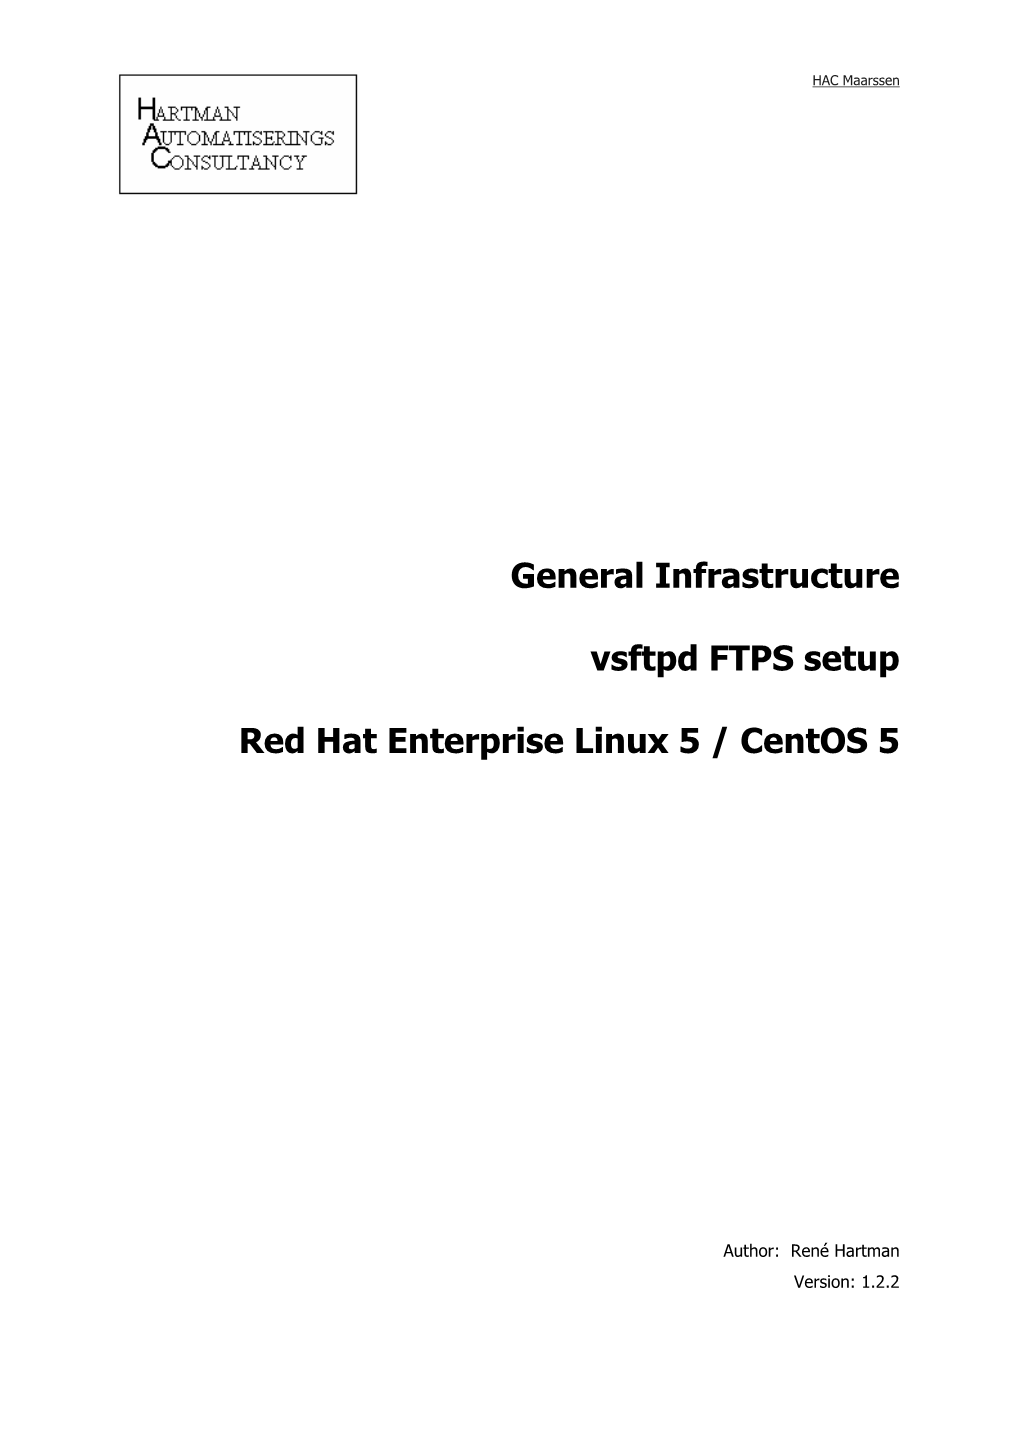 General Infrastructure Vsftpd FTPS Setup Red Hat Enterprise Linux 5